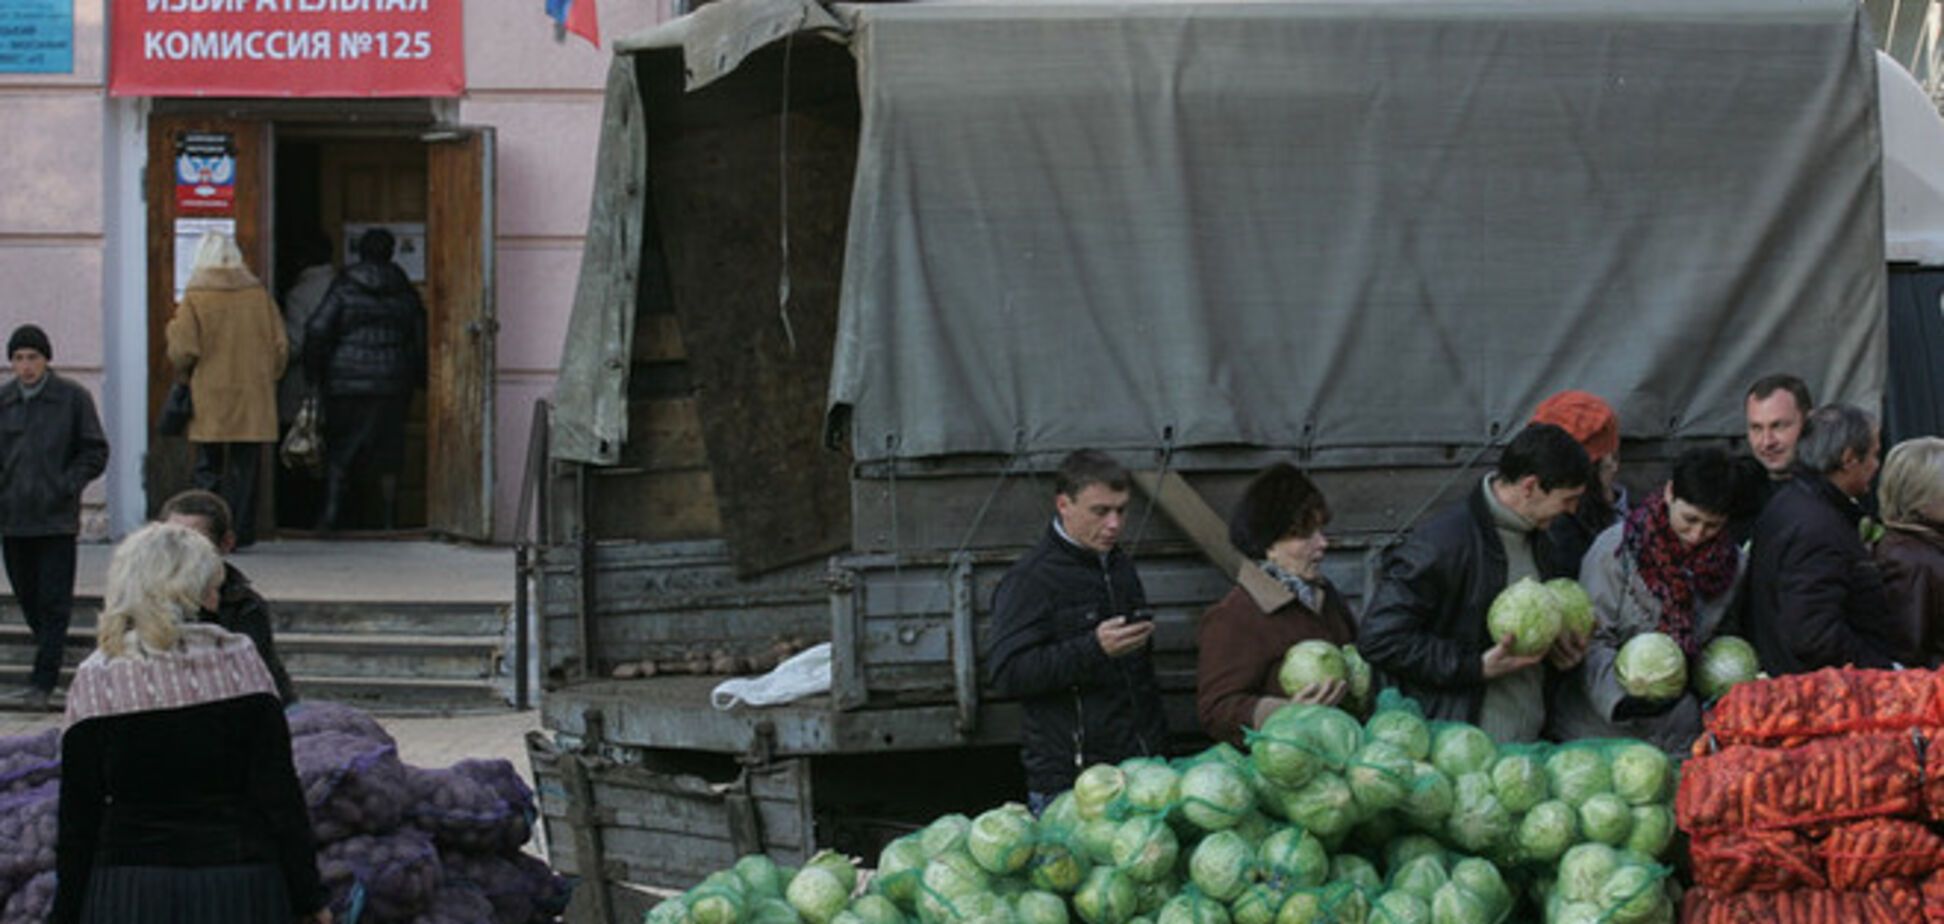 Німецькі ЗМІ назвали трагедією 'голосування' в окупованому Донбасі за їжу